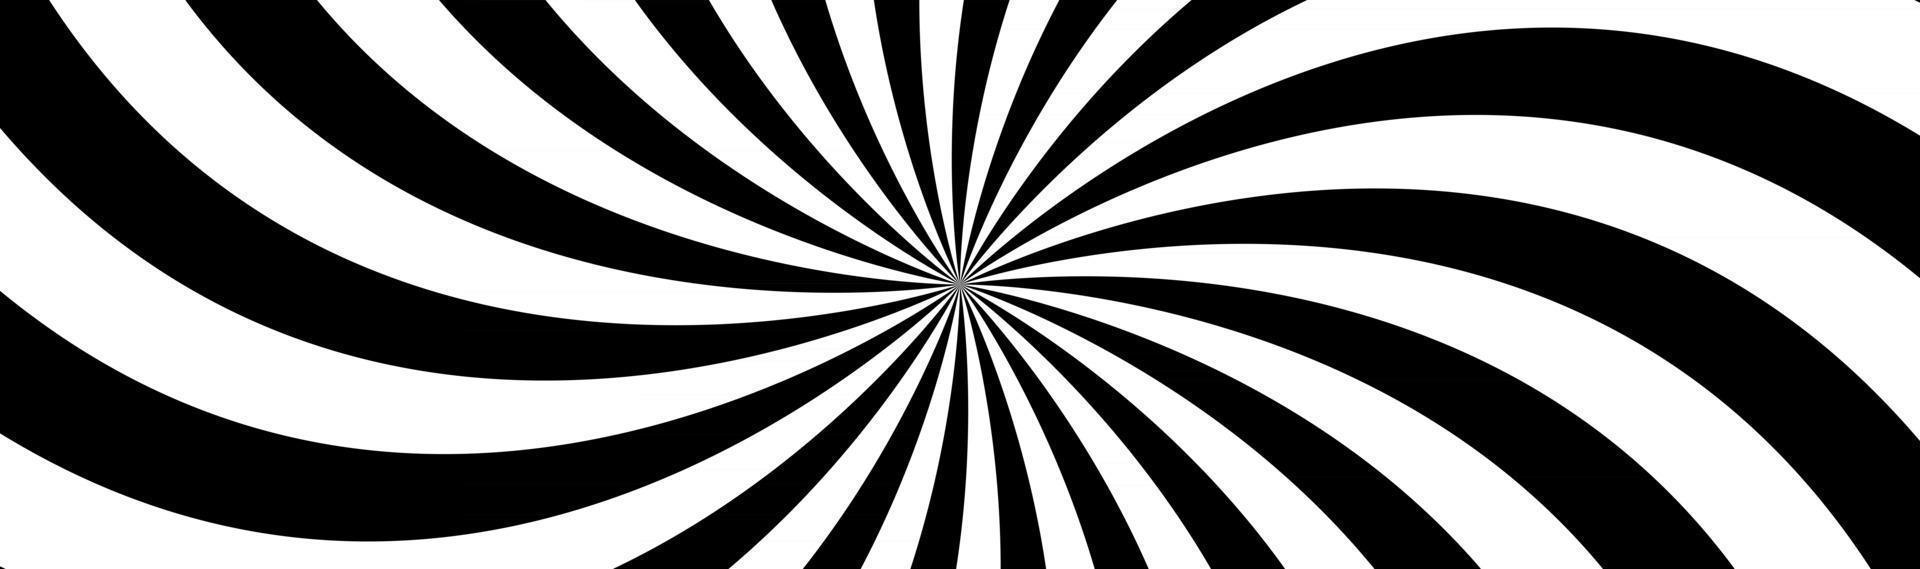 En-tête spirale noir et blanc tourbillonnant motif radial abstrait bannière d'illustration vectorielle vecteur